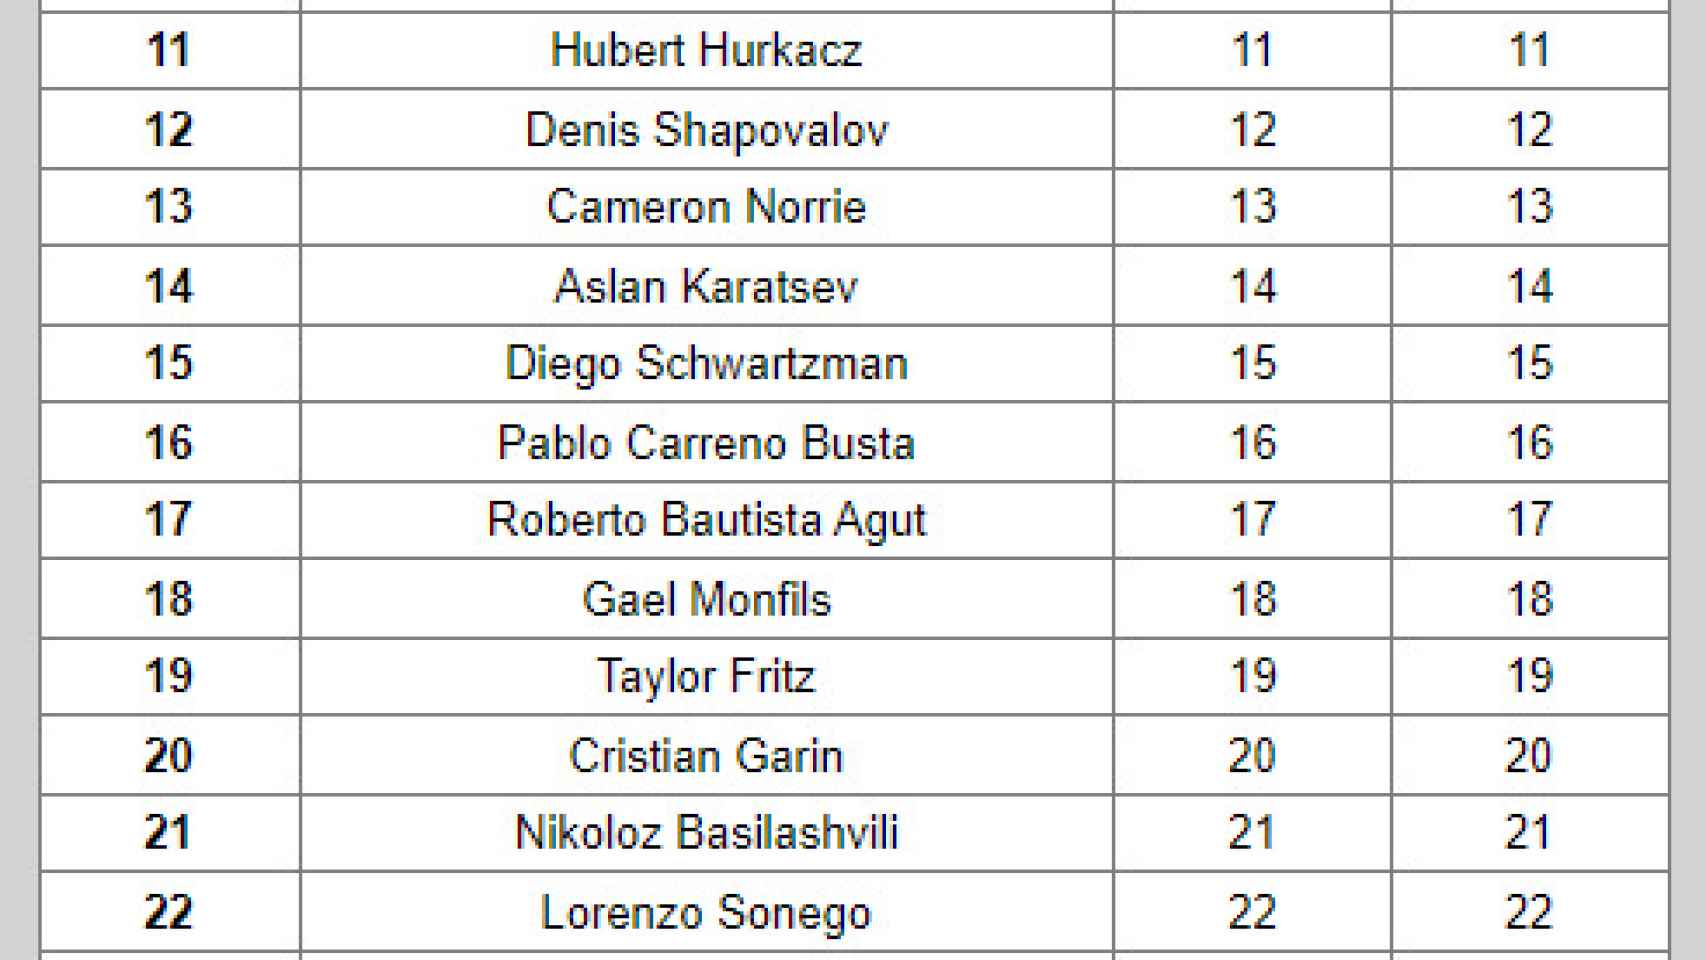 Jugadores inscritos en Indian Wells en orden de ranking ATP